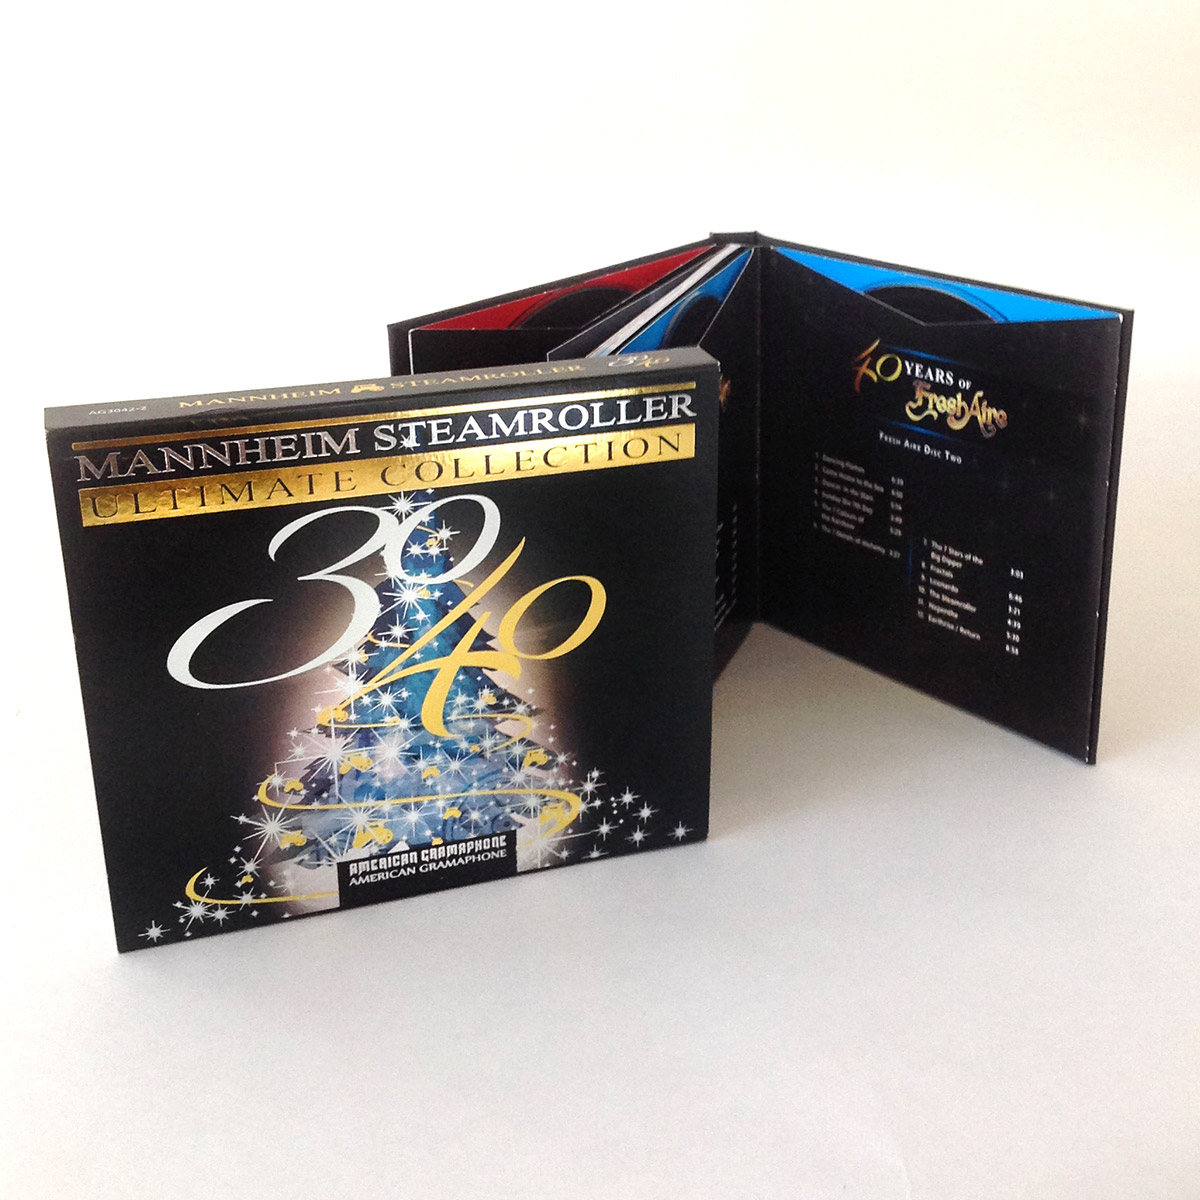 Mannheim Steamroller Packaging - CD / Compact Disc Replication